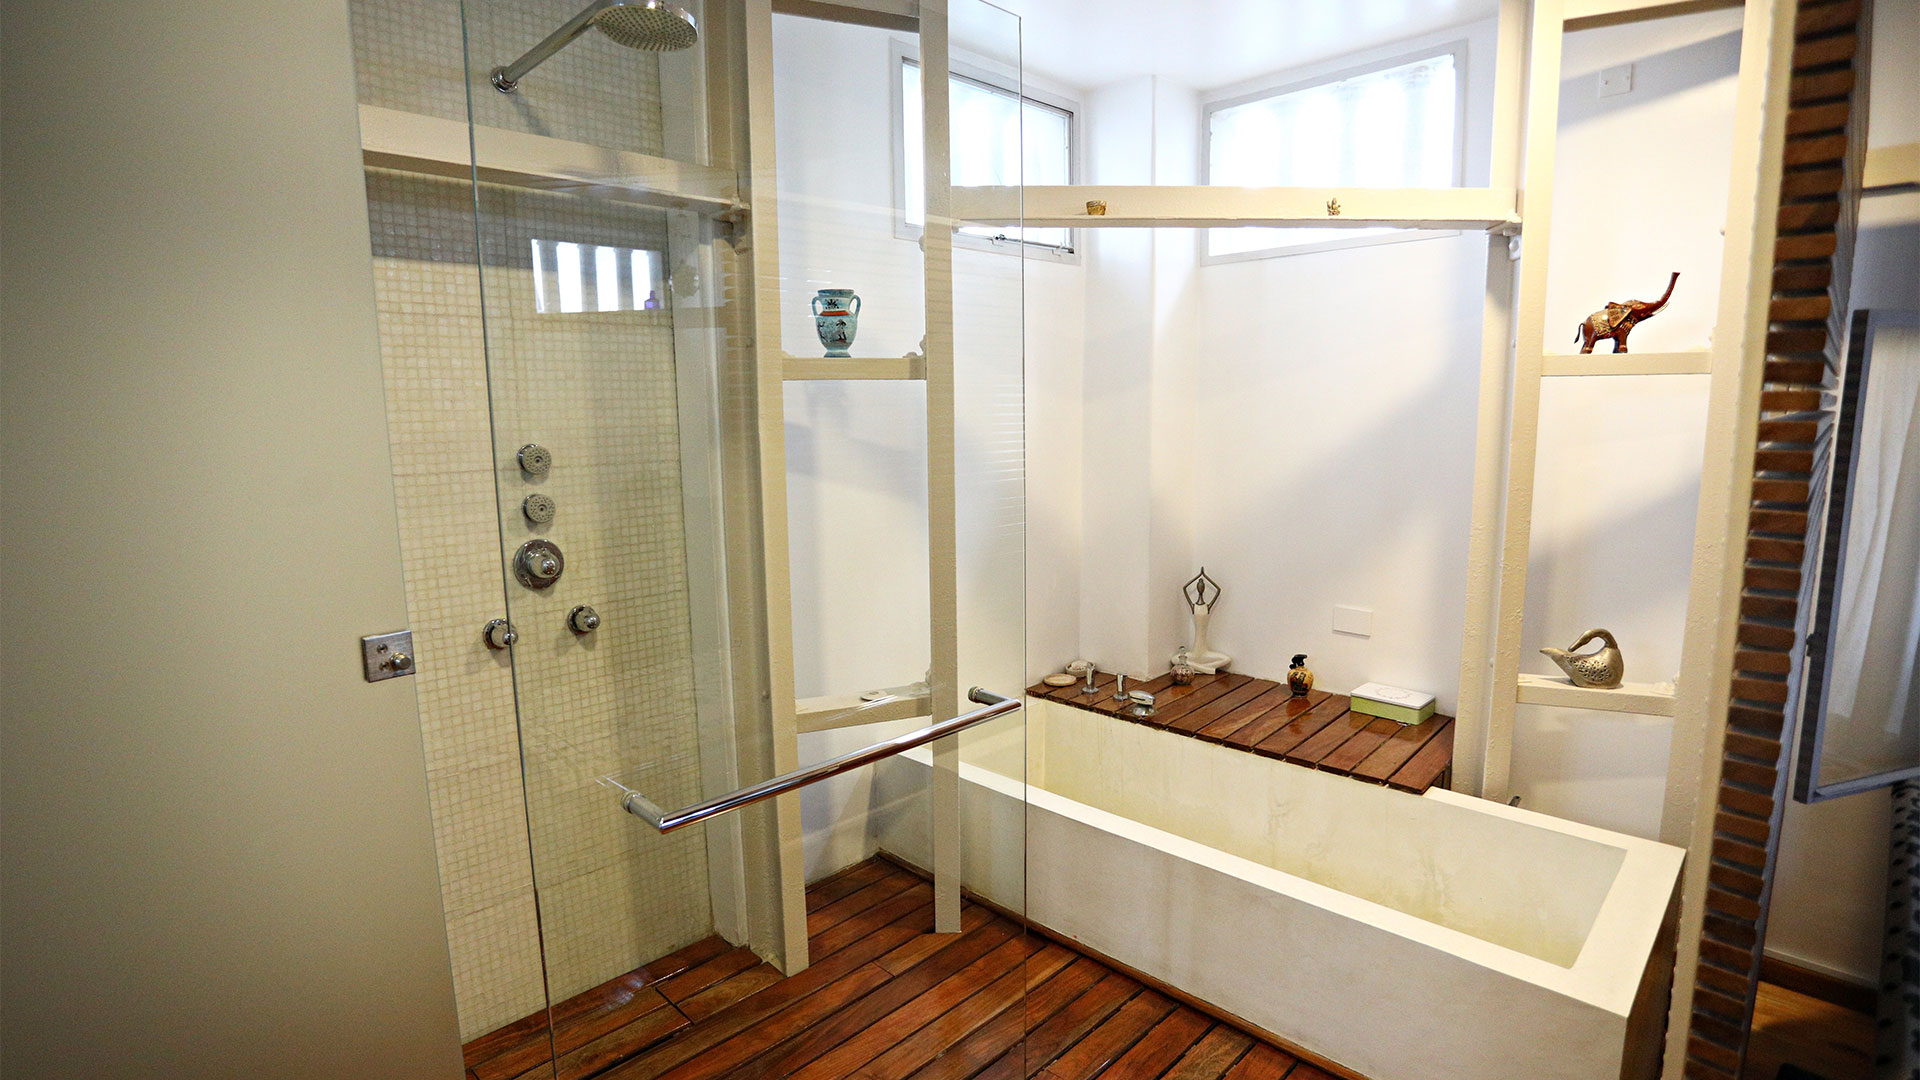 El baño con bañera nueva y deck de madera, refaccionado por completo